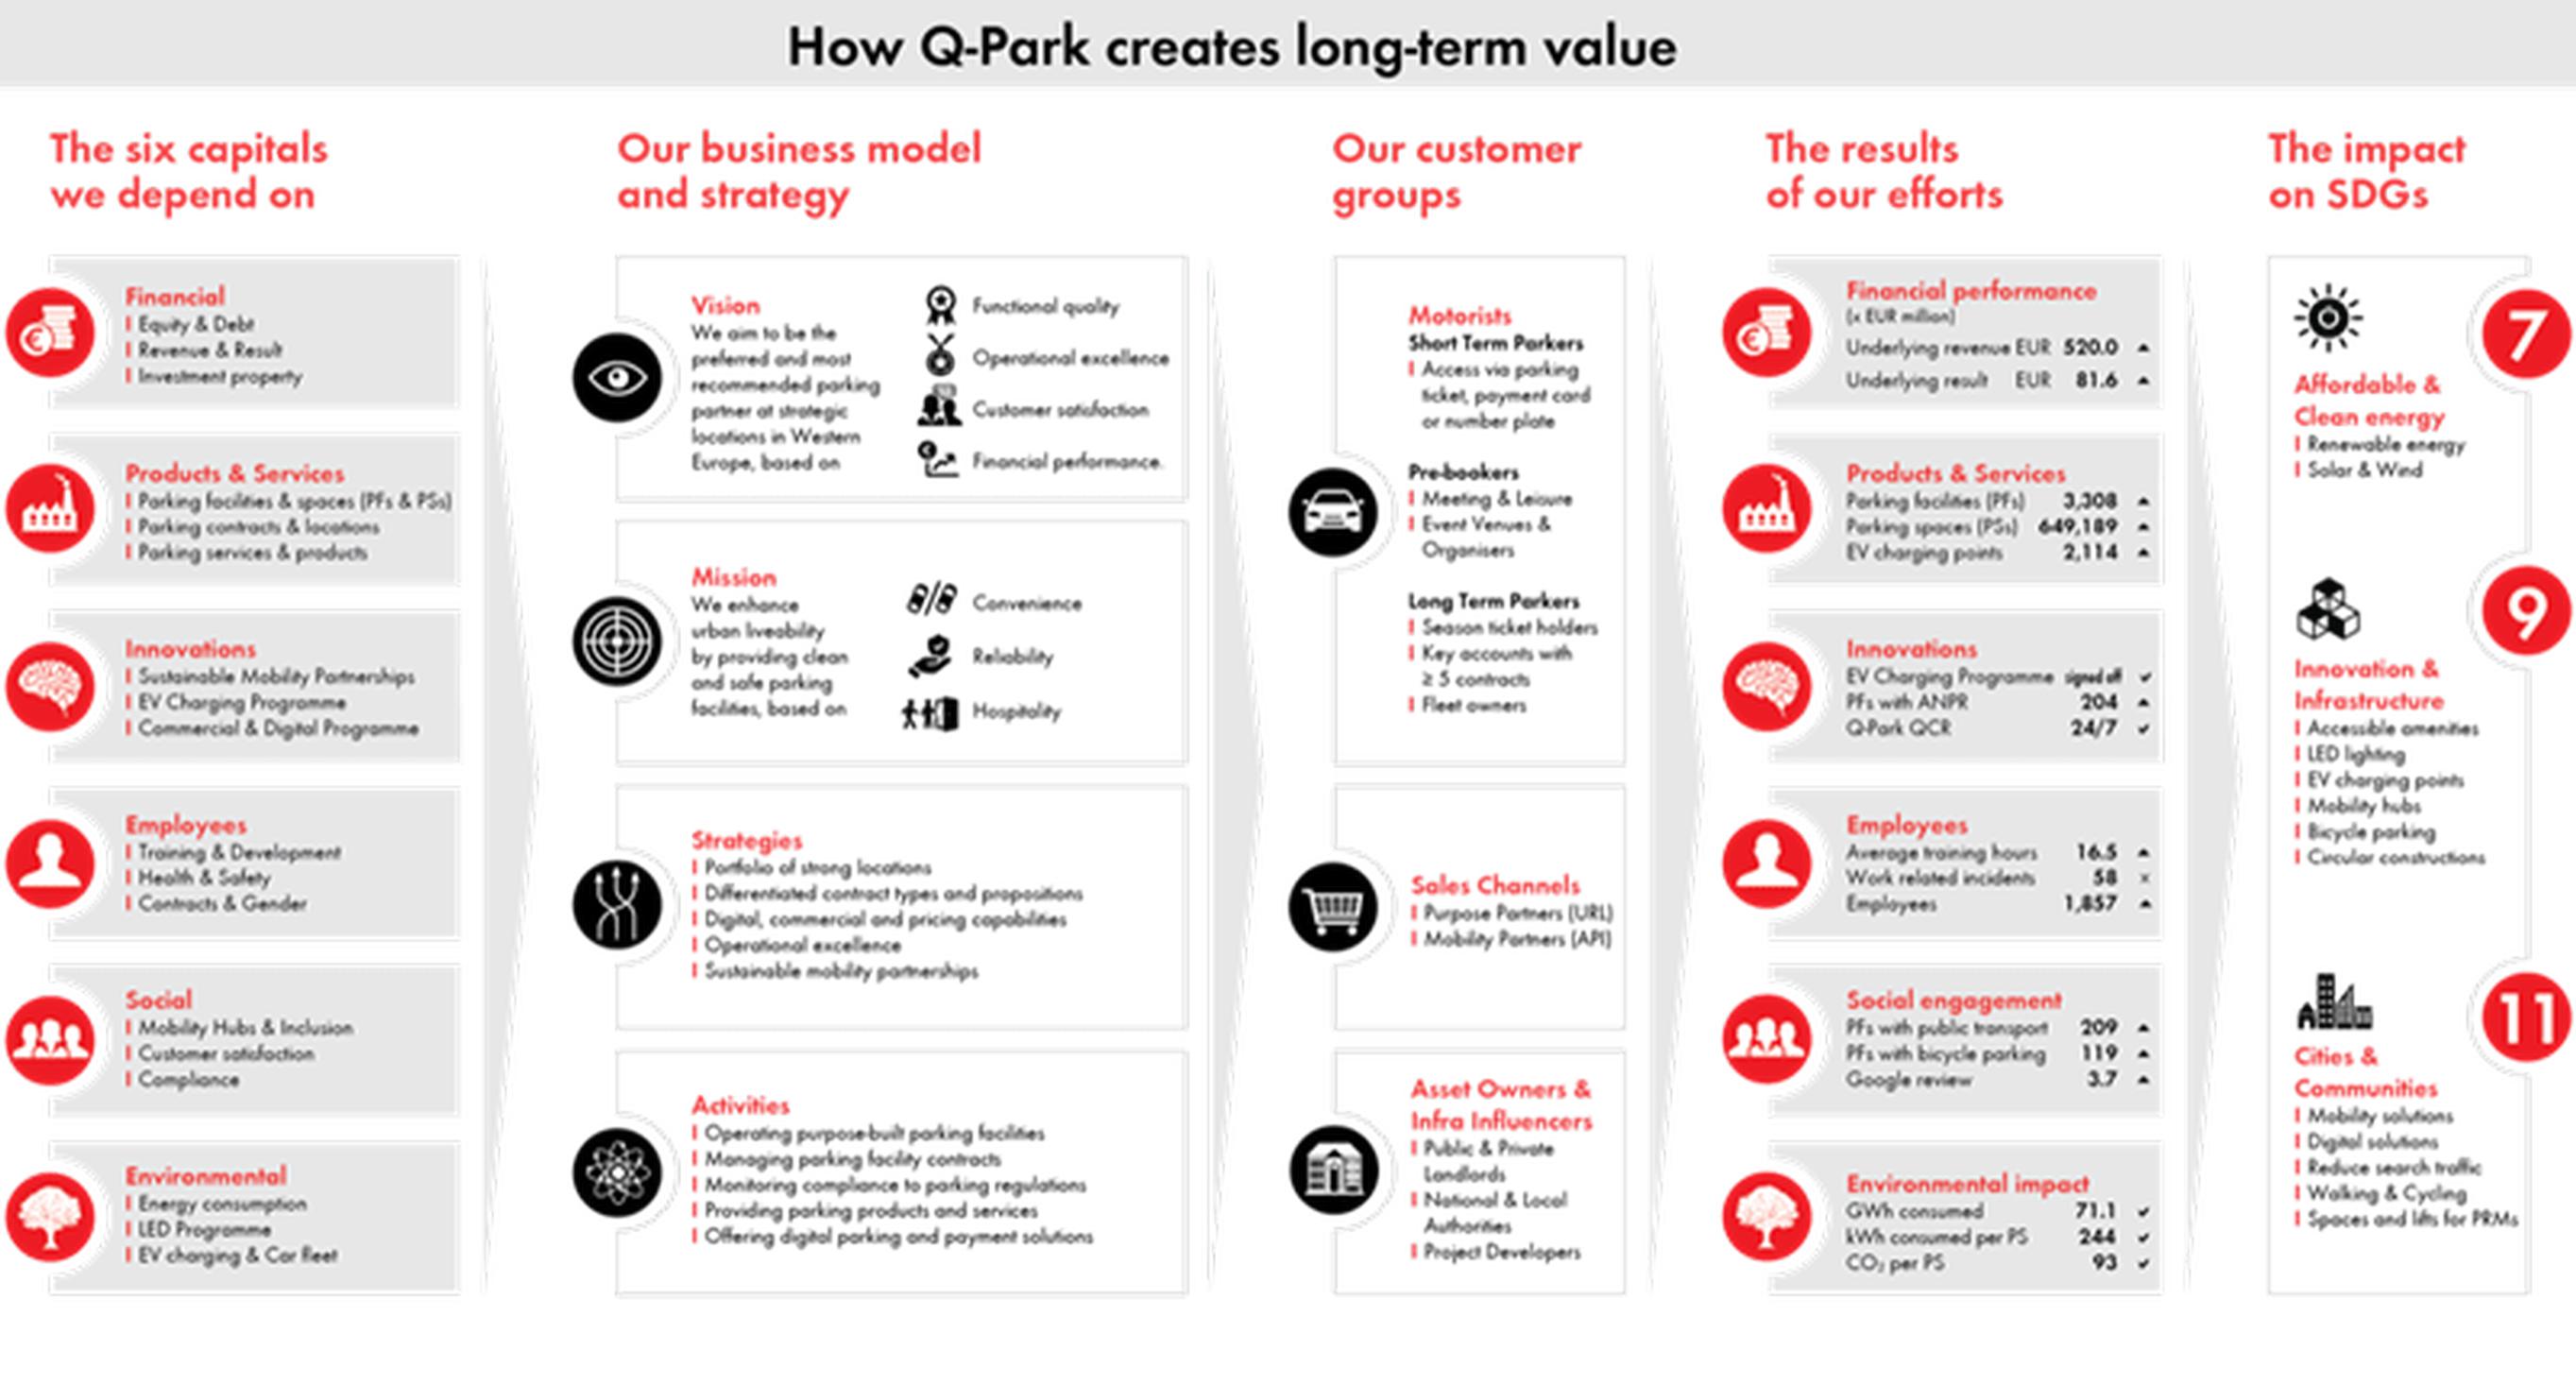 How CSR creates long-term value